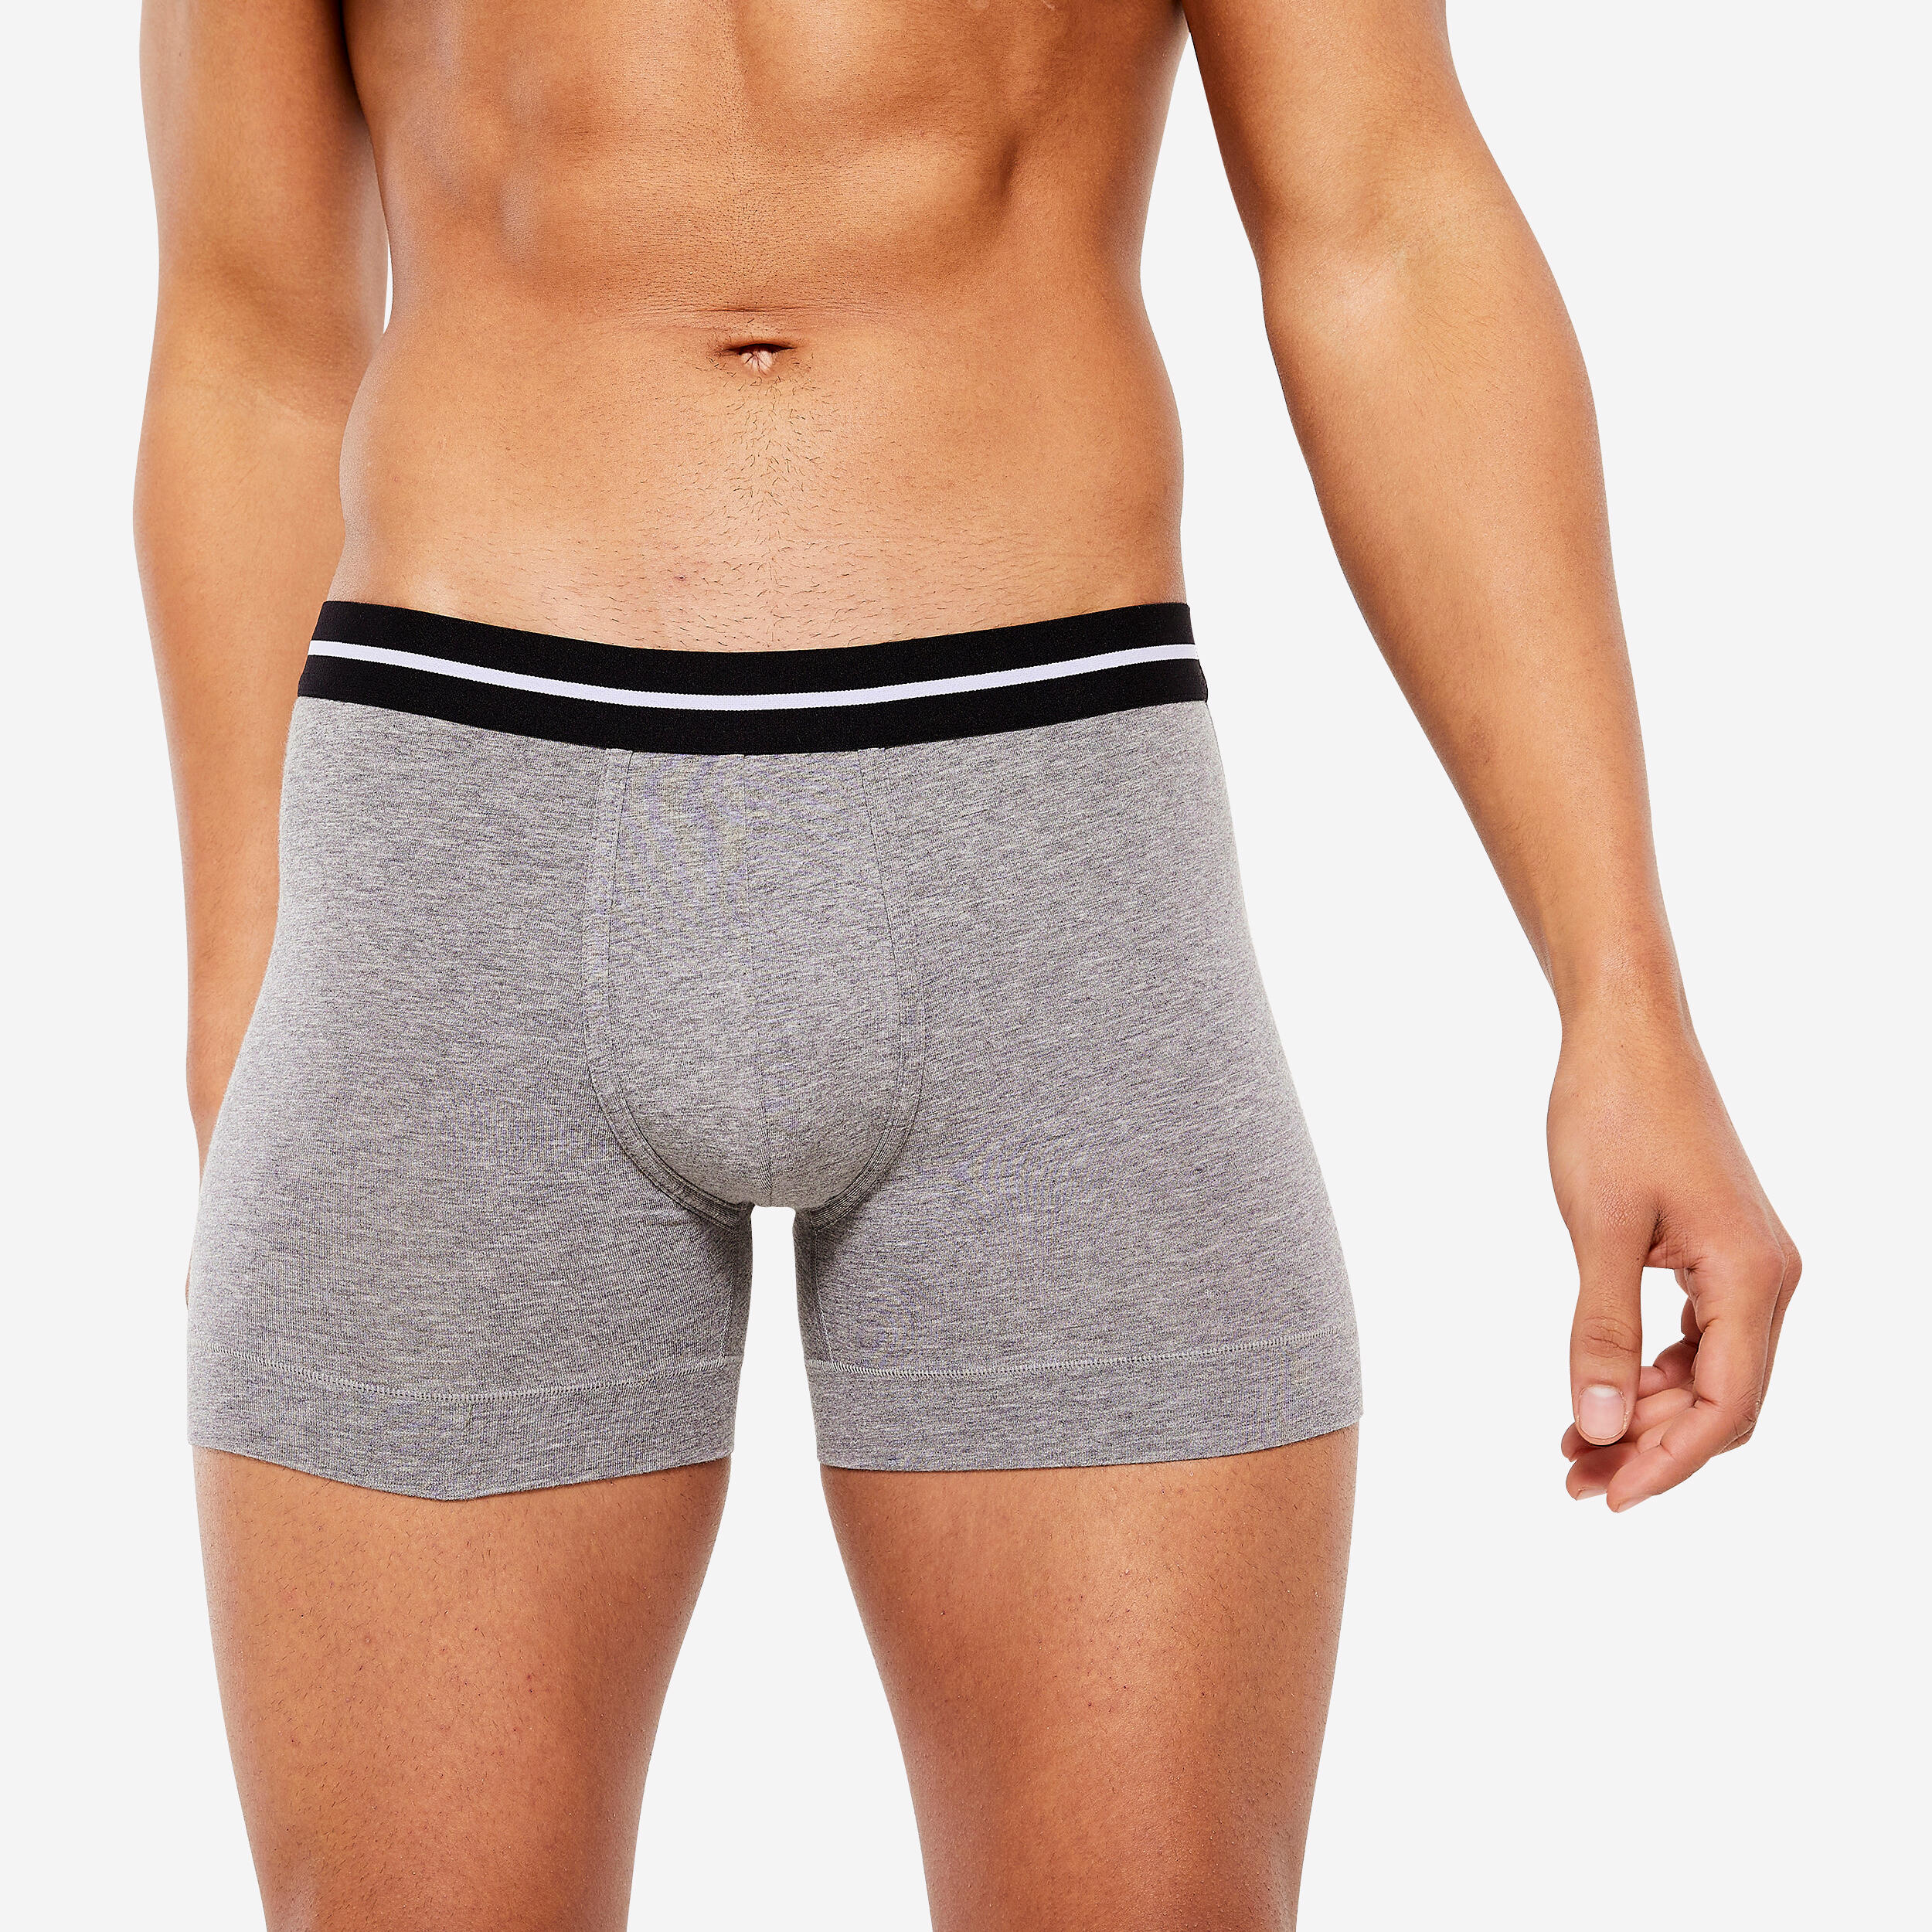 2 Pc Men's Knit Boxer Shorts 100% Cotton Plain Solid Assorted Colors  Underwear 